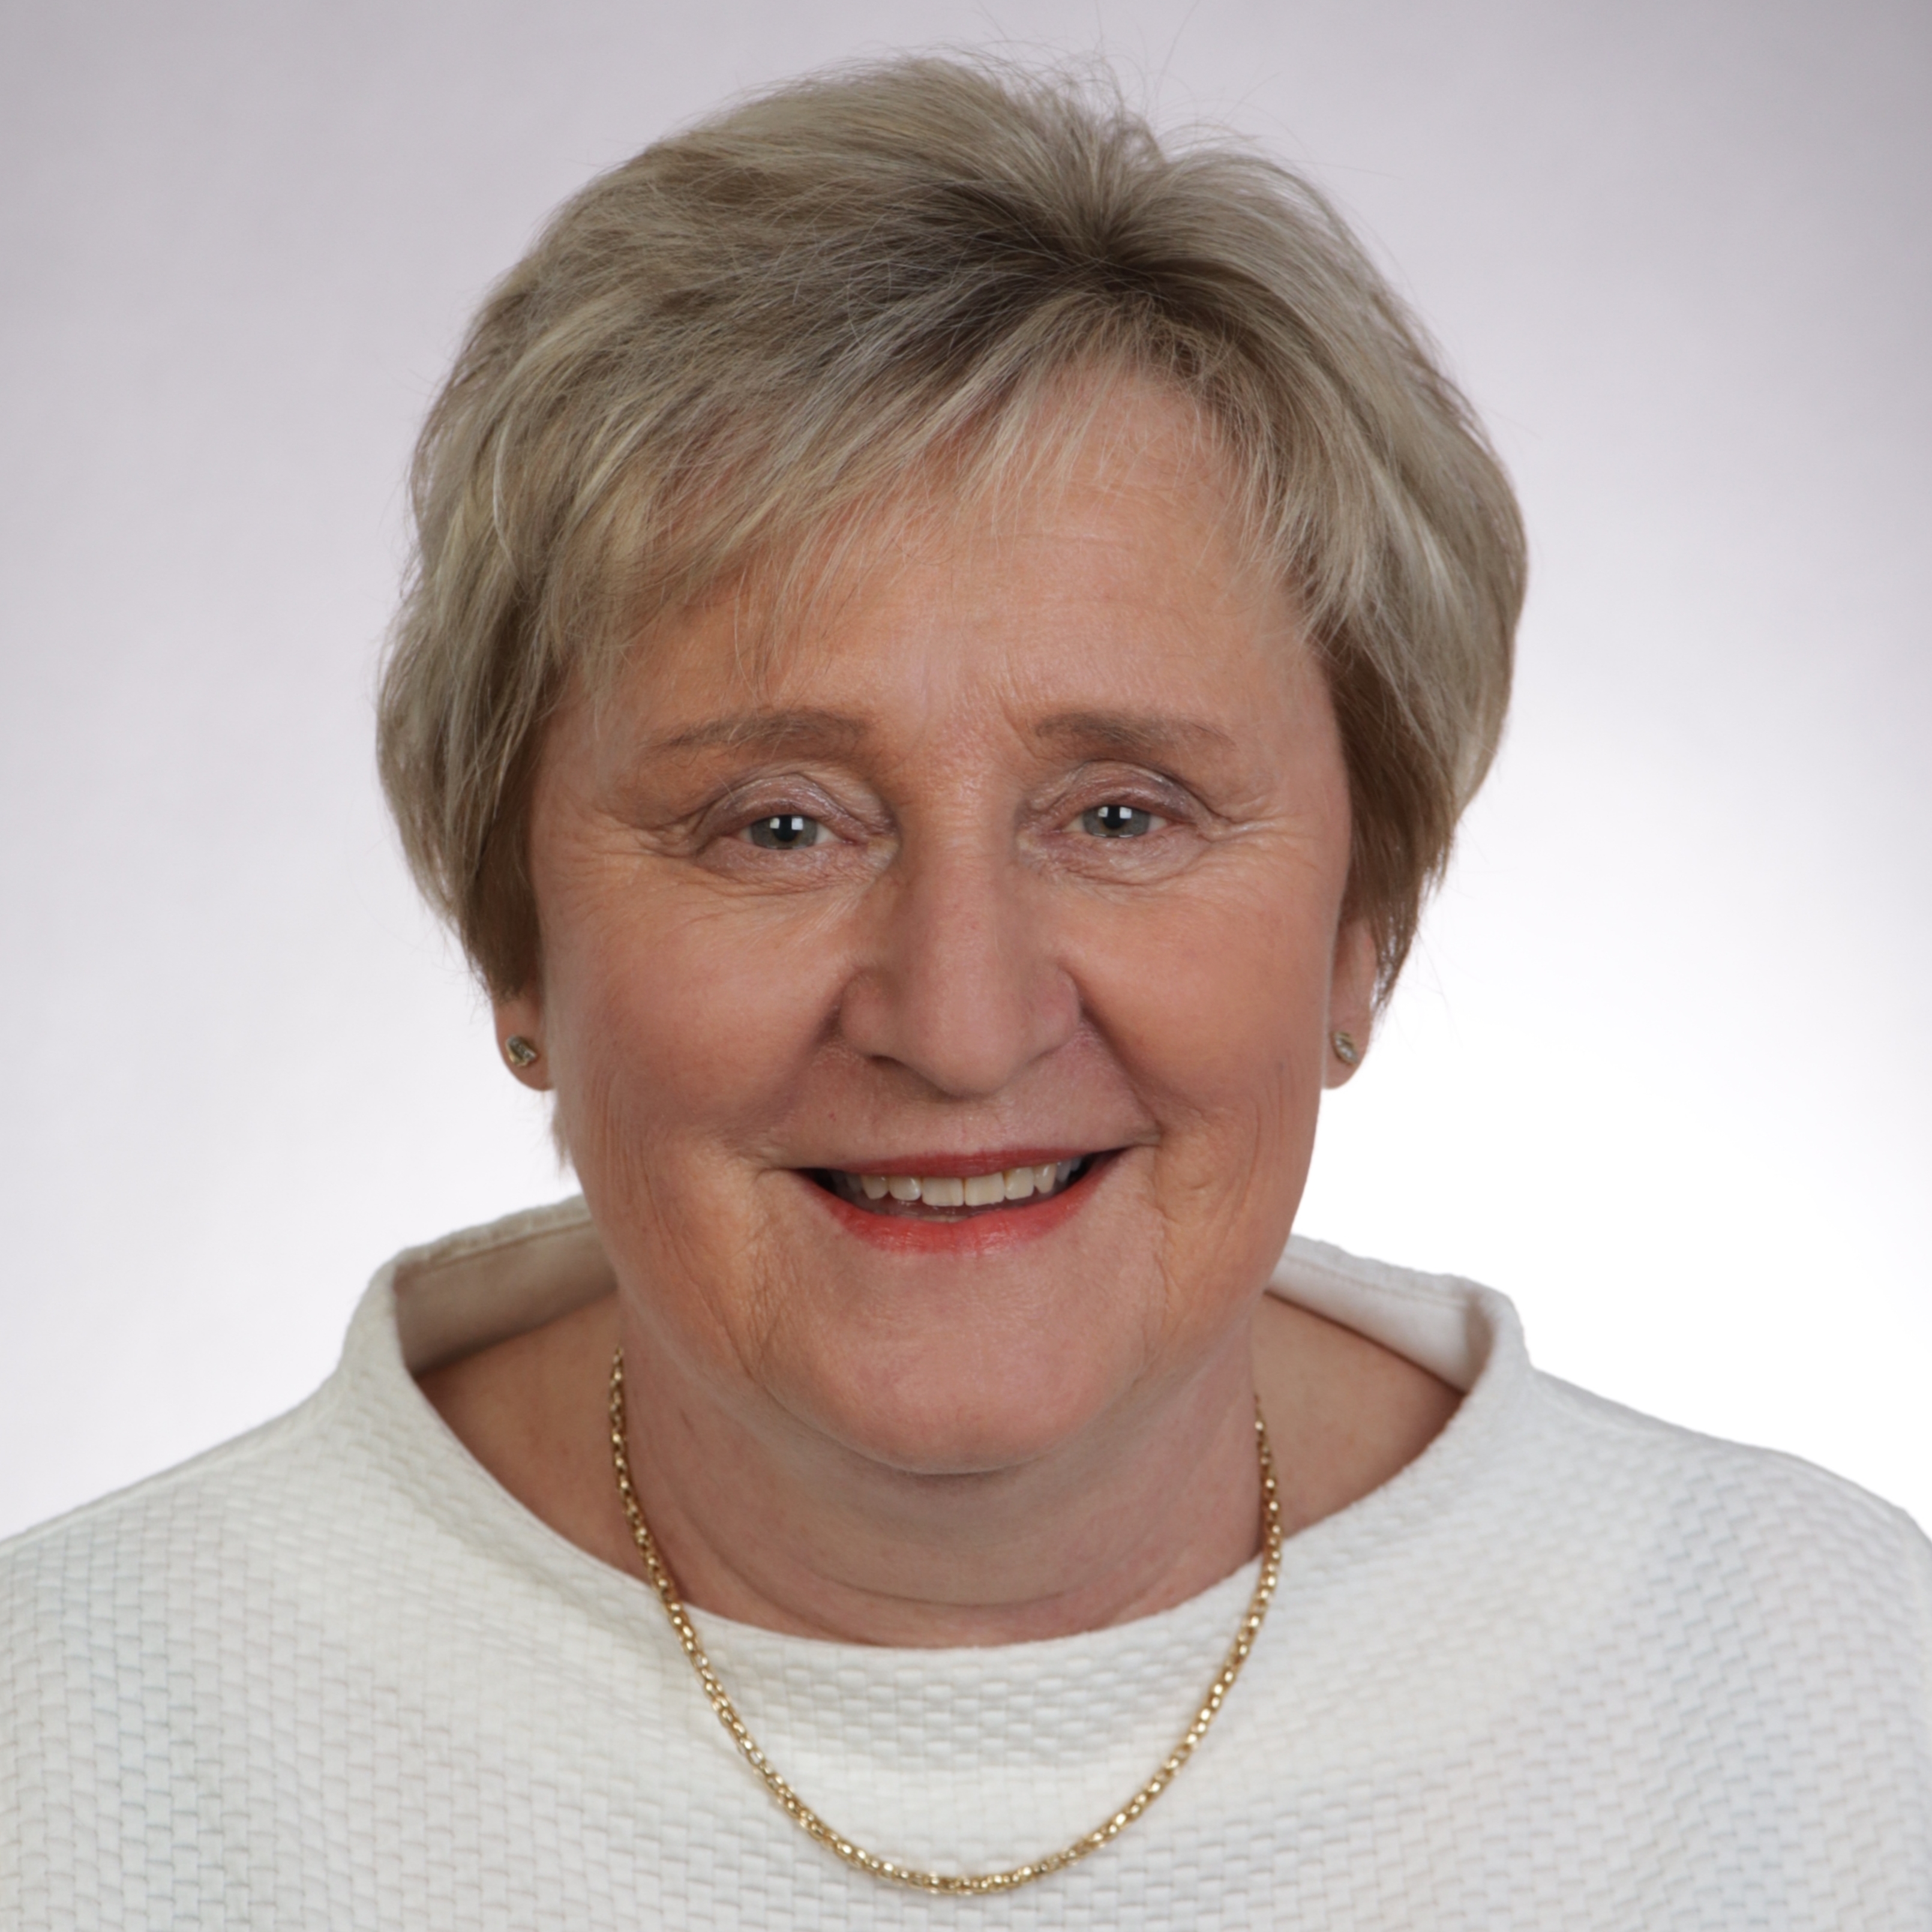 Porträt zeigt die Präsidentin des Landesarbeitsgerichts Baden-Württemberg Dr. Betina Rieker